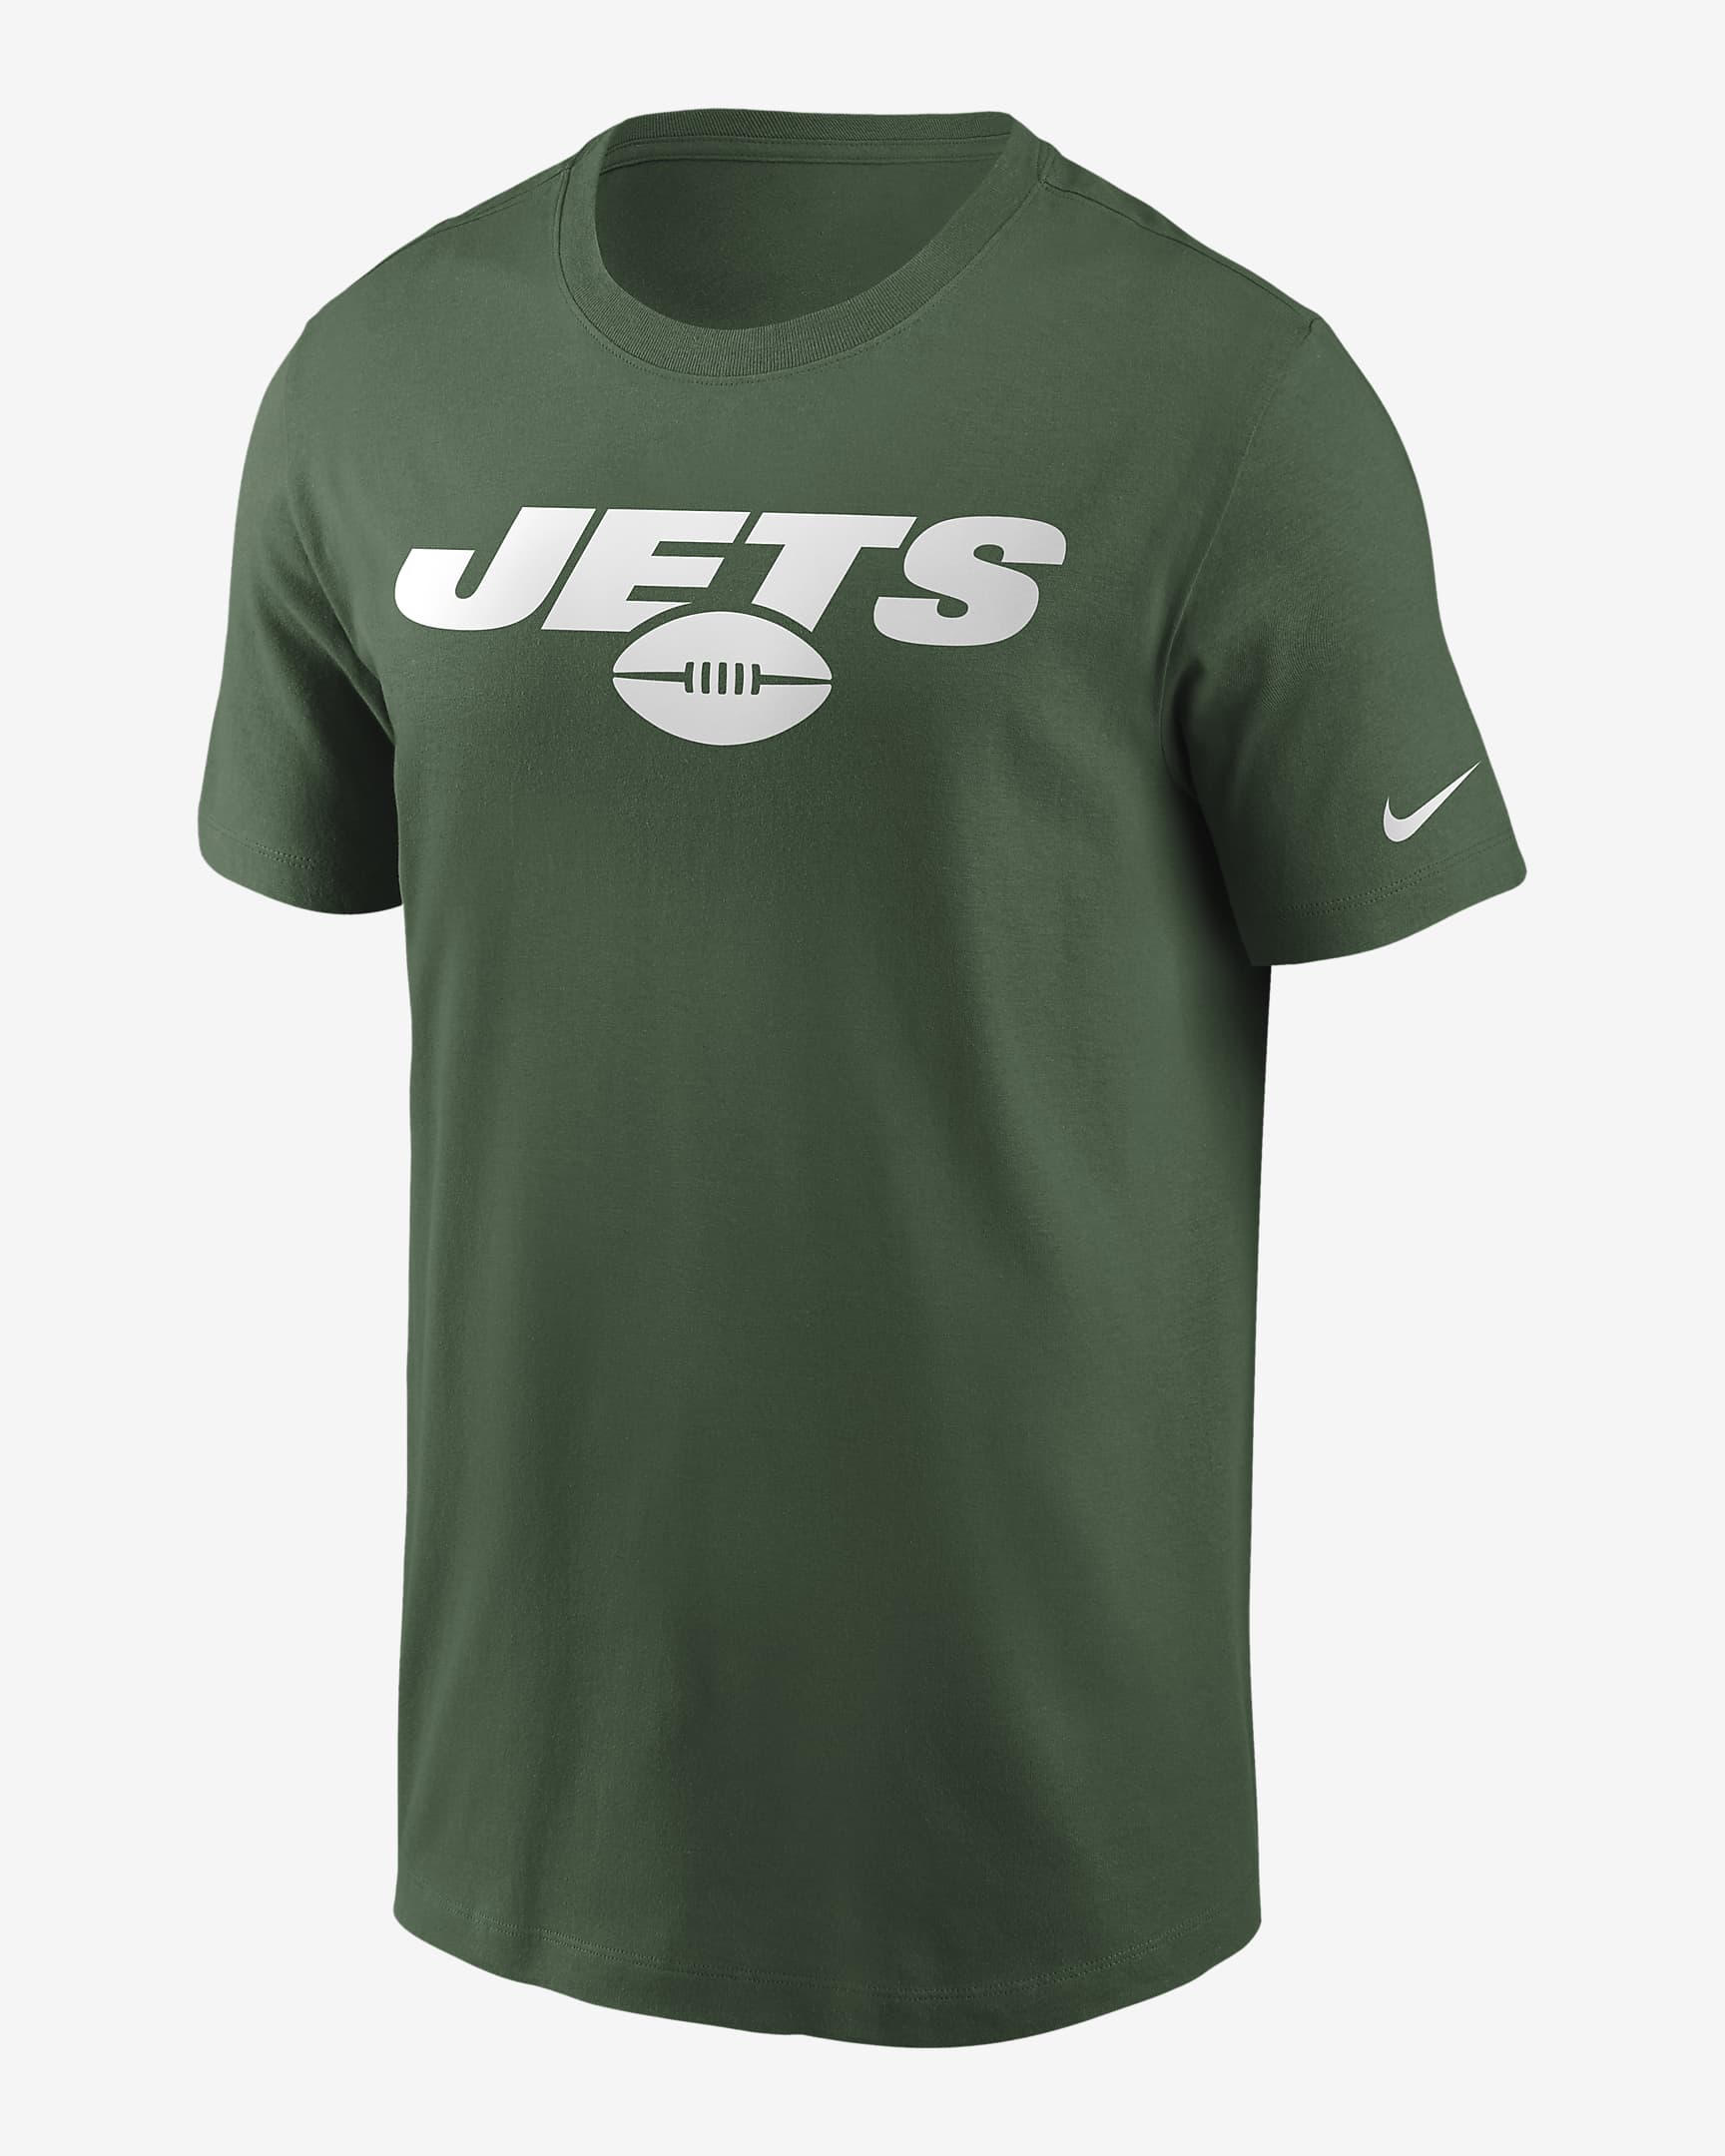 Nike (NFL New York Jets) Men's T-Shirt. Nike.com